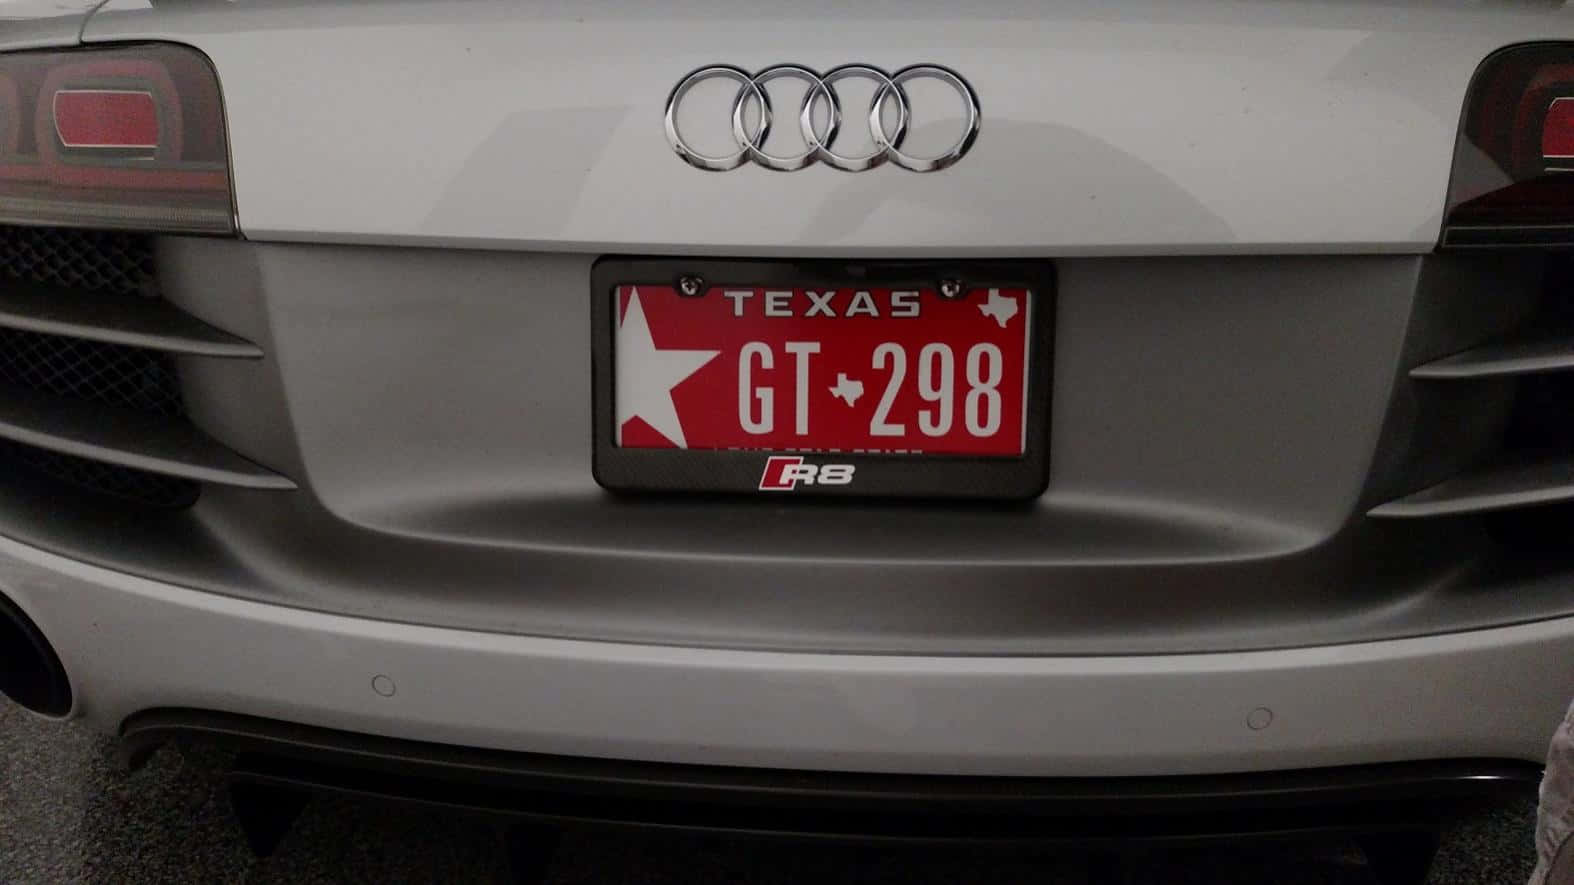 Placade La Licencia Roja De Audi Texas